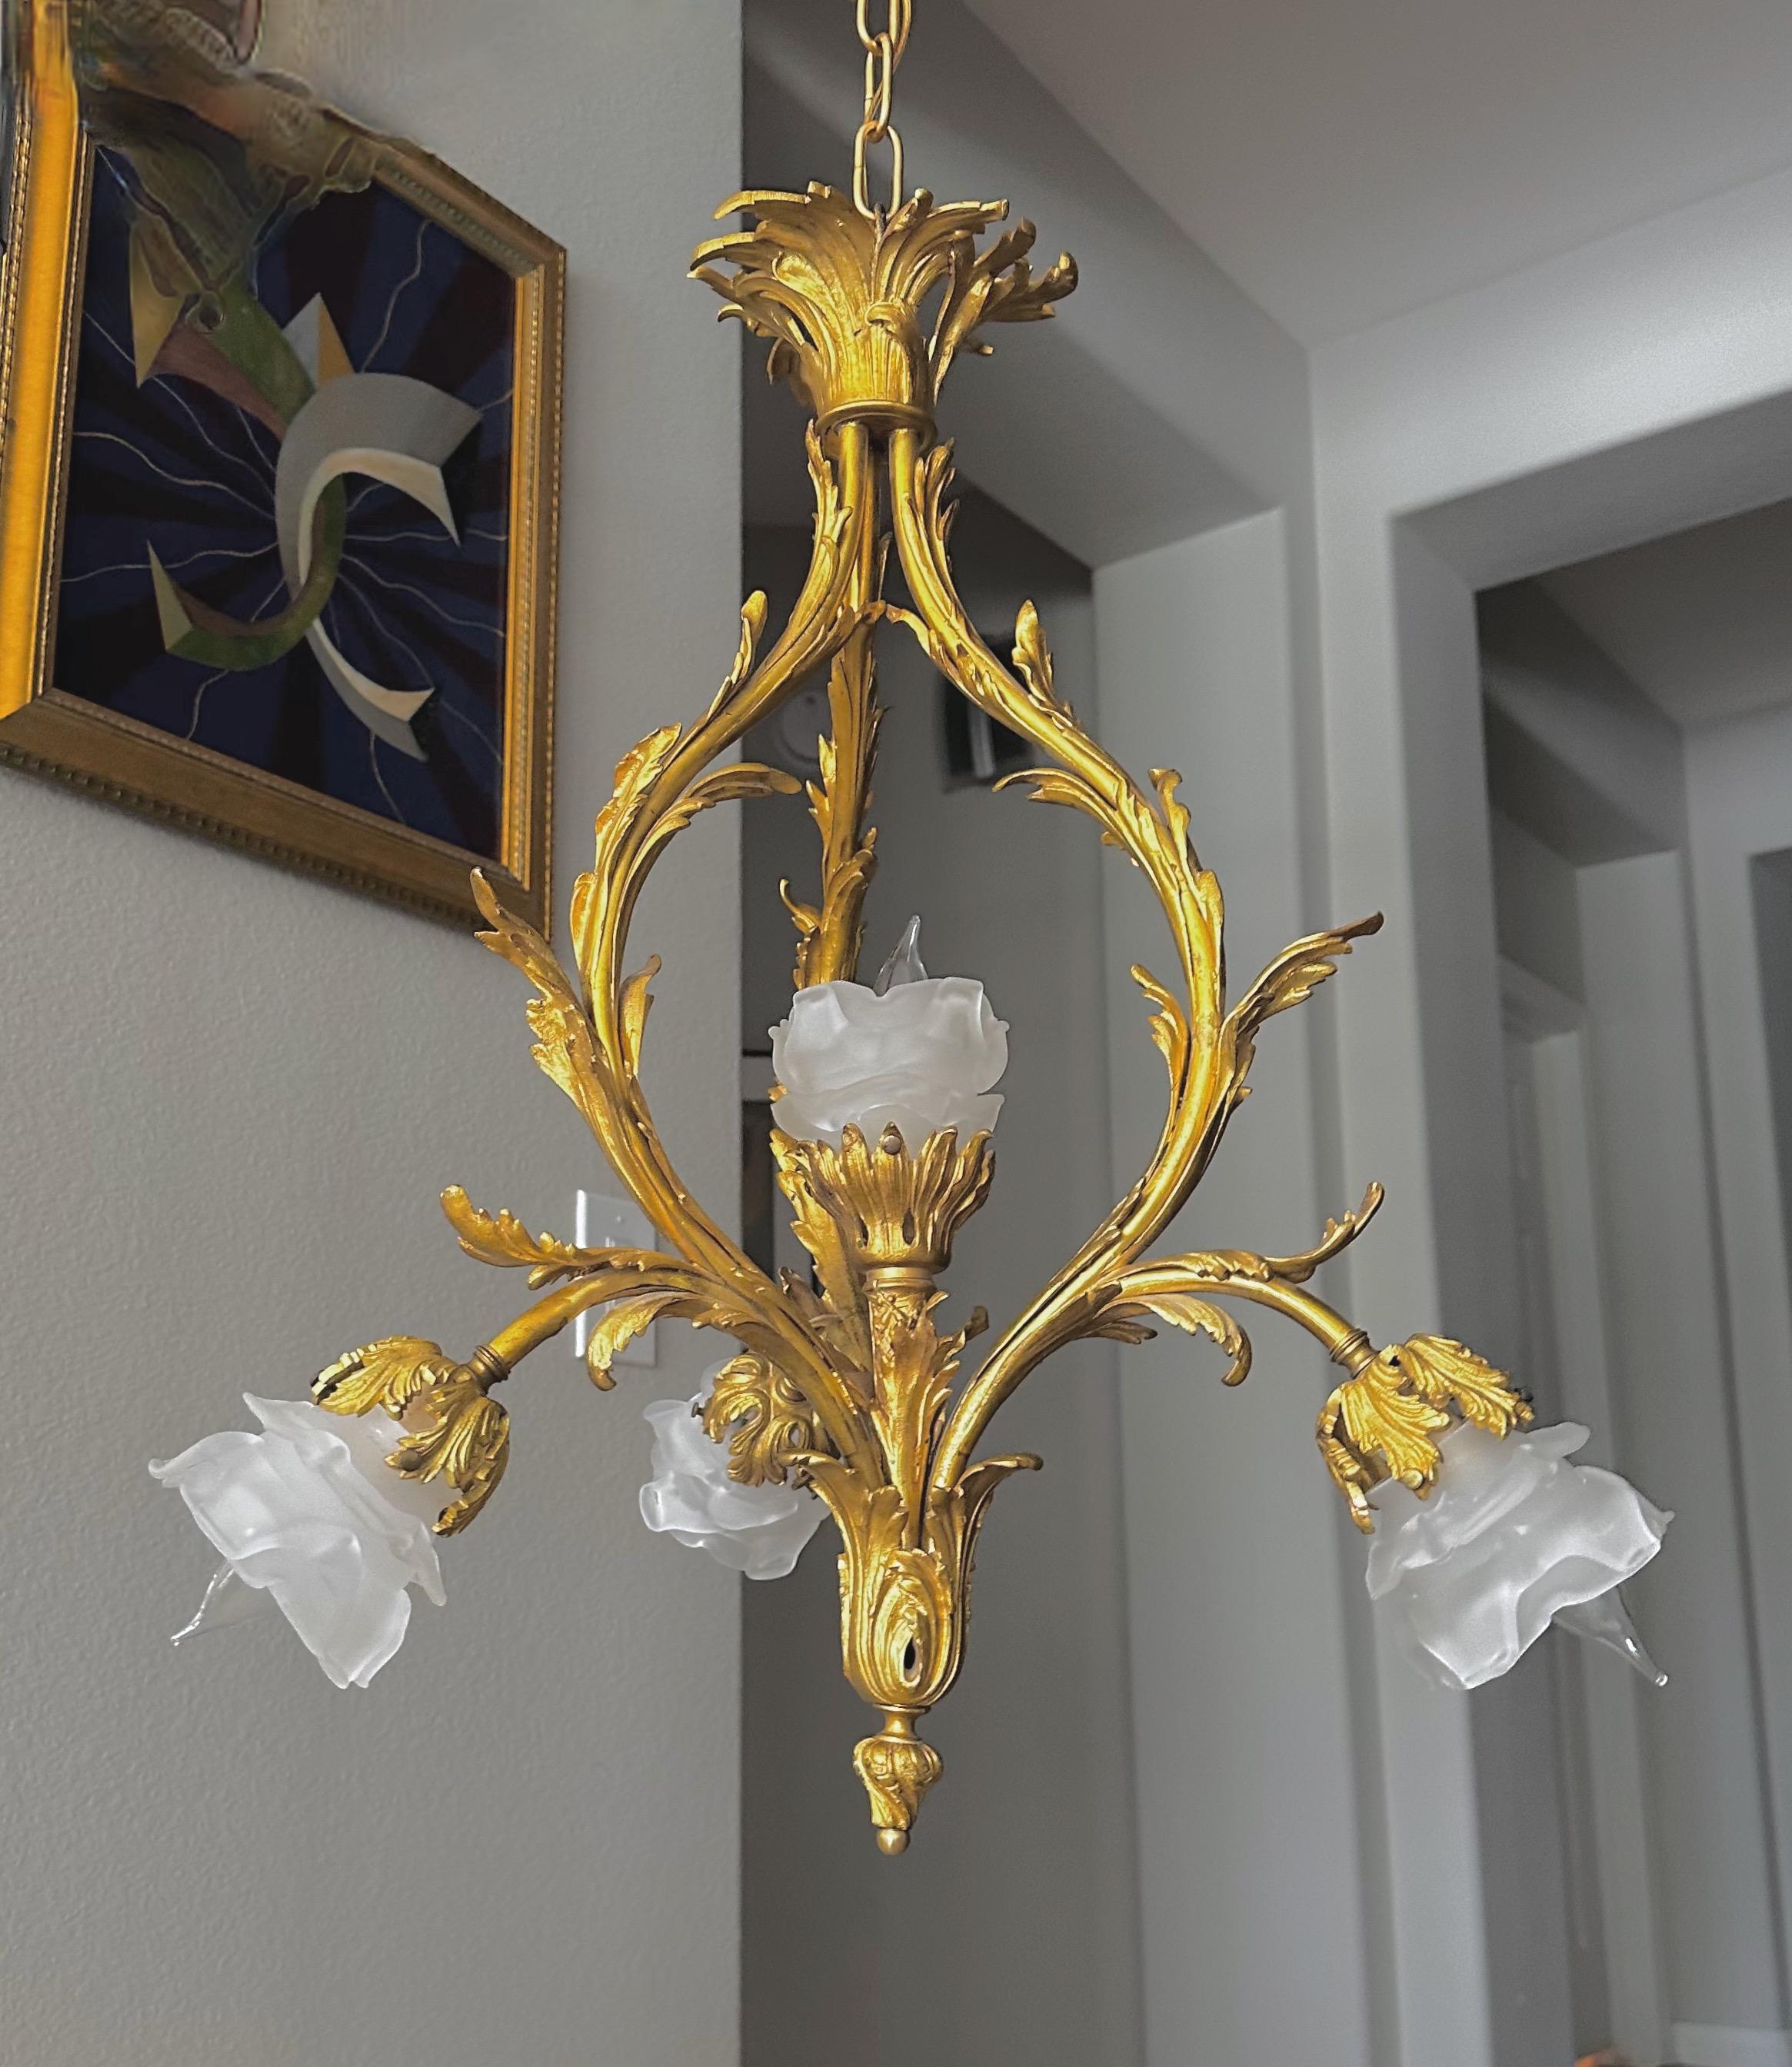 Pendelleuchte oder Kronleuchter aus vergoldeter Bronze im Stil Louis XV mit Rokoko-Einfluss. Rosenknospenschirme aus mattiertem Glas auf 5 verschnörkelten Armen mit blattförmigen Details. Für 5 Glühbirnen in Kandelabergröße, neu verdrahtet. 
Größe